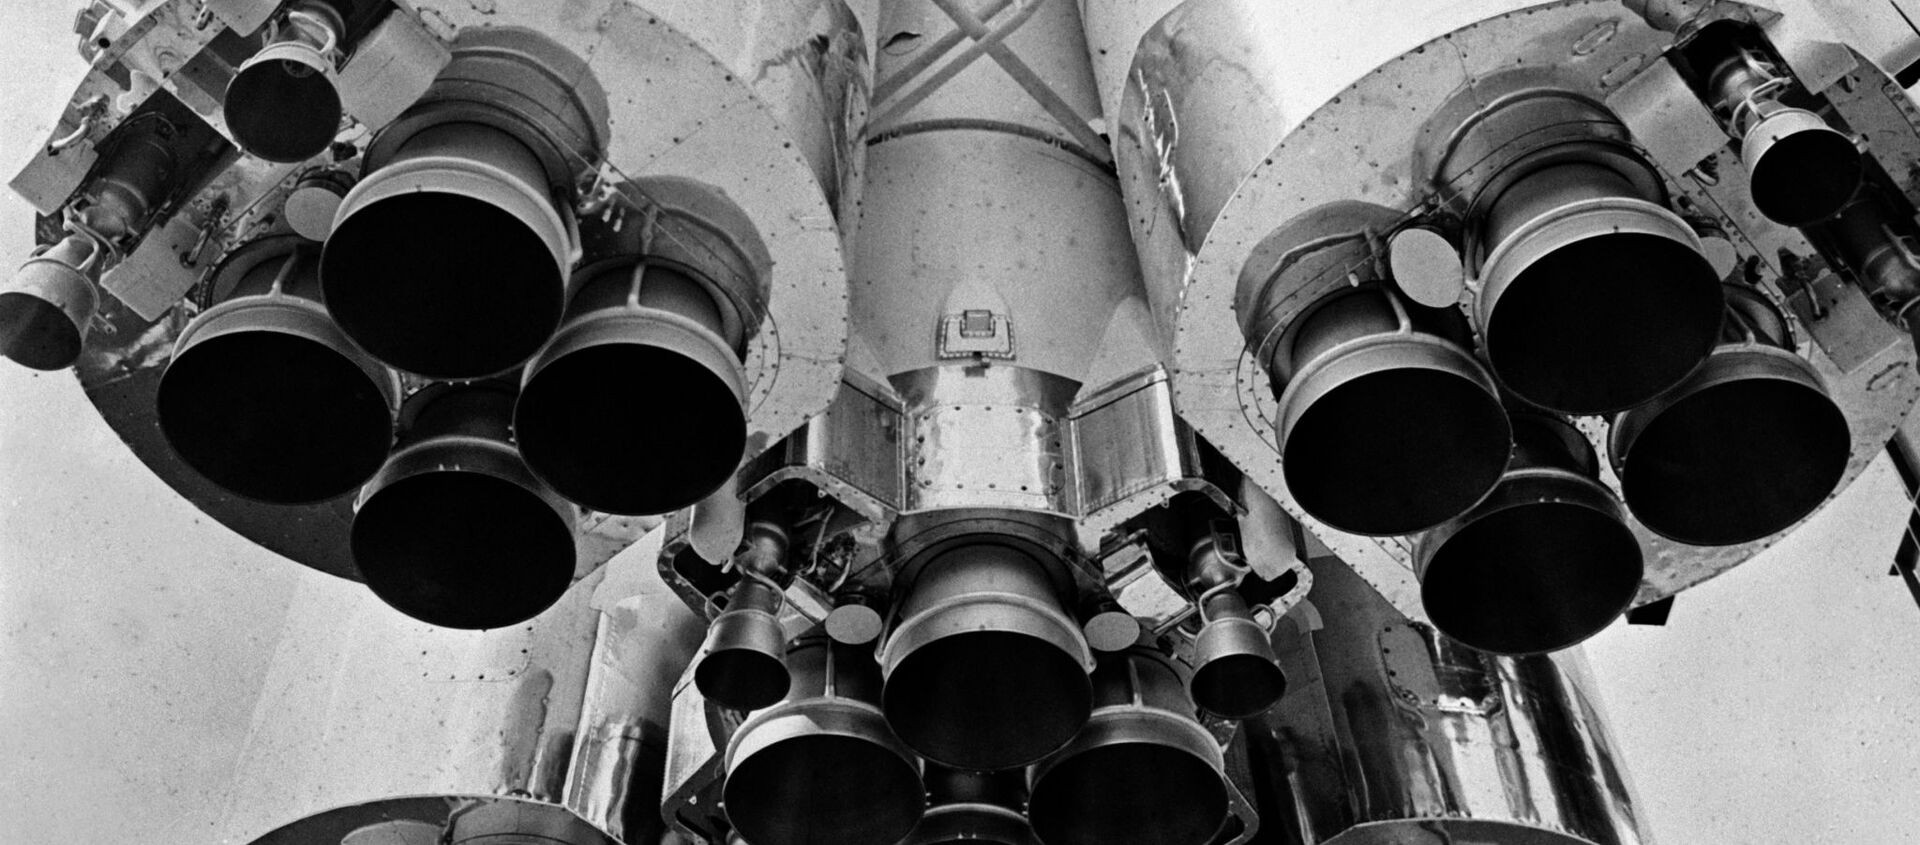 Tên lửa đẩy với tàu vũ trụ Vostok trong gian Cosmos tại Triển lãm Thành tựu Kinh tế Quốc dân Liên Xô - Sputnik Việt Nam, 1920, 12.04.2021